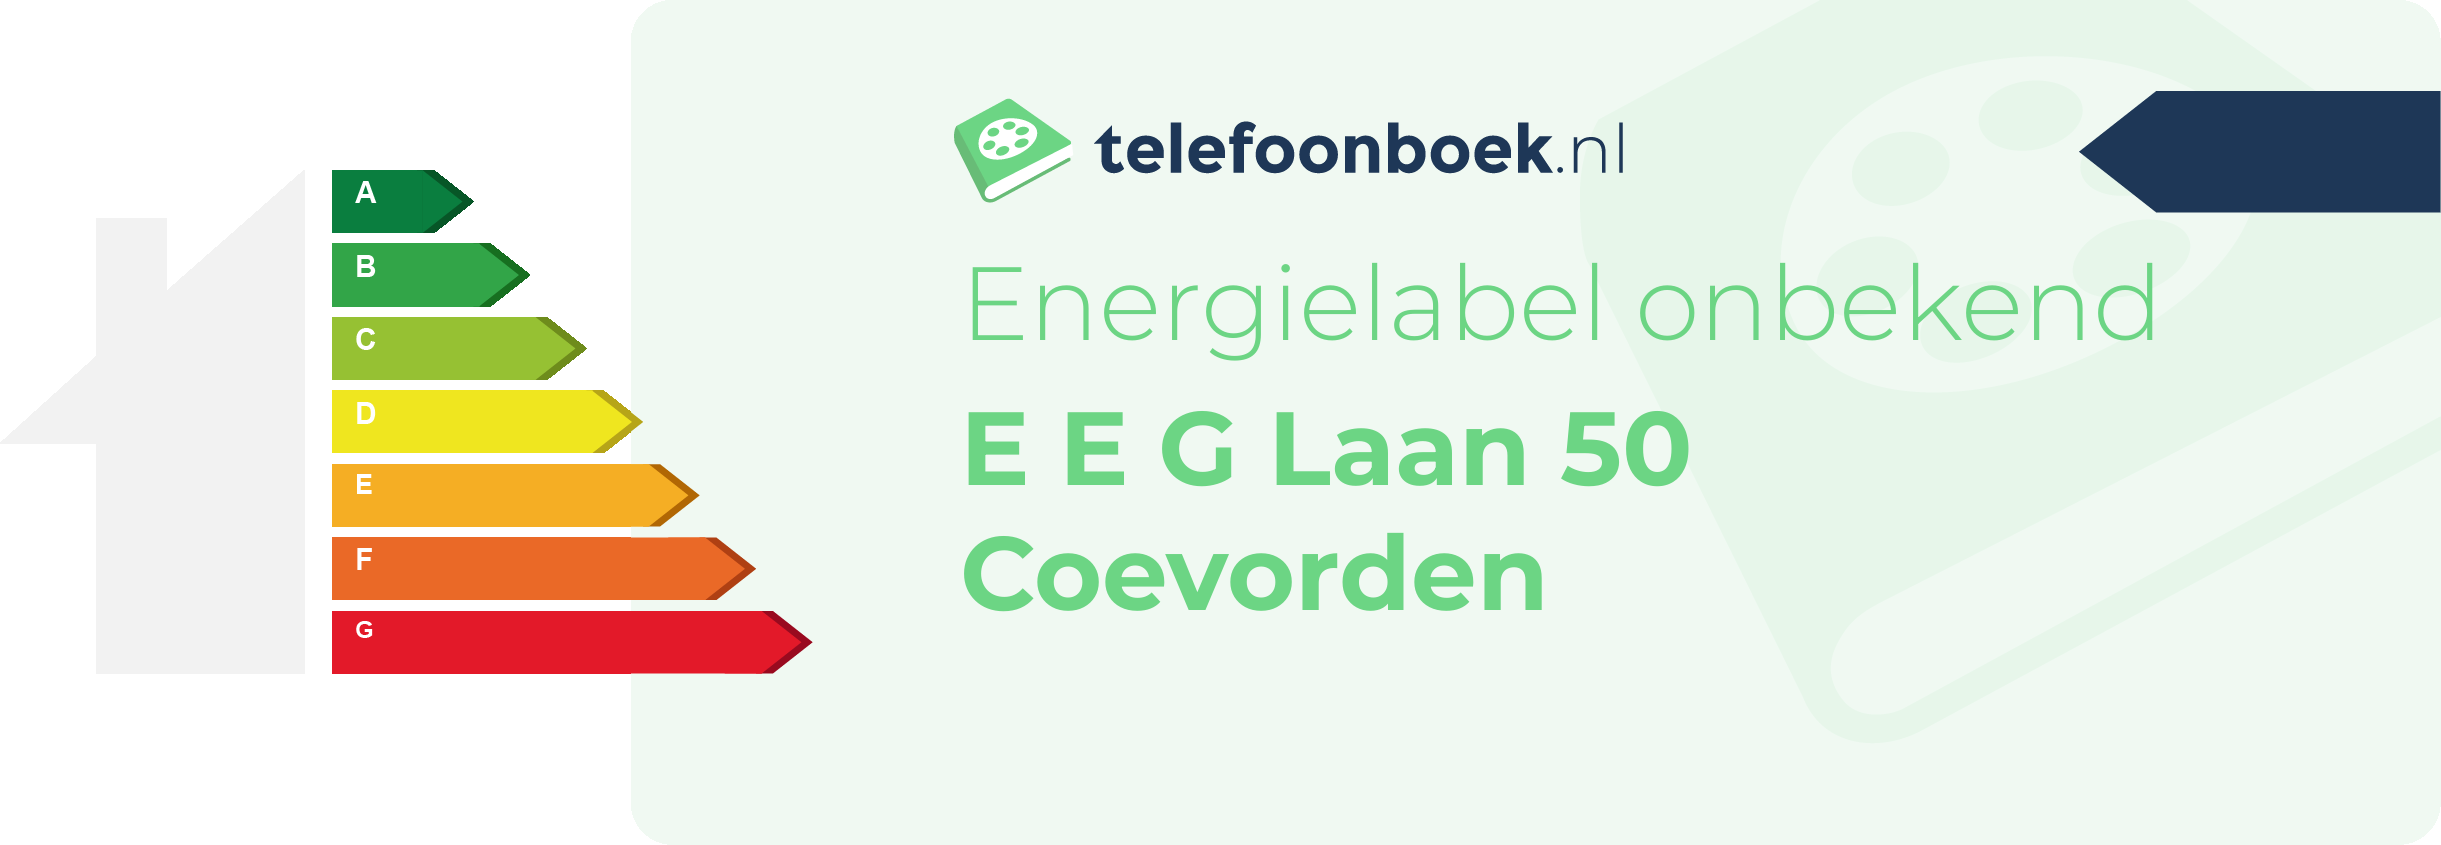 Energielabel E E G Laan 50 Coevorden